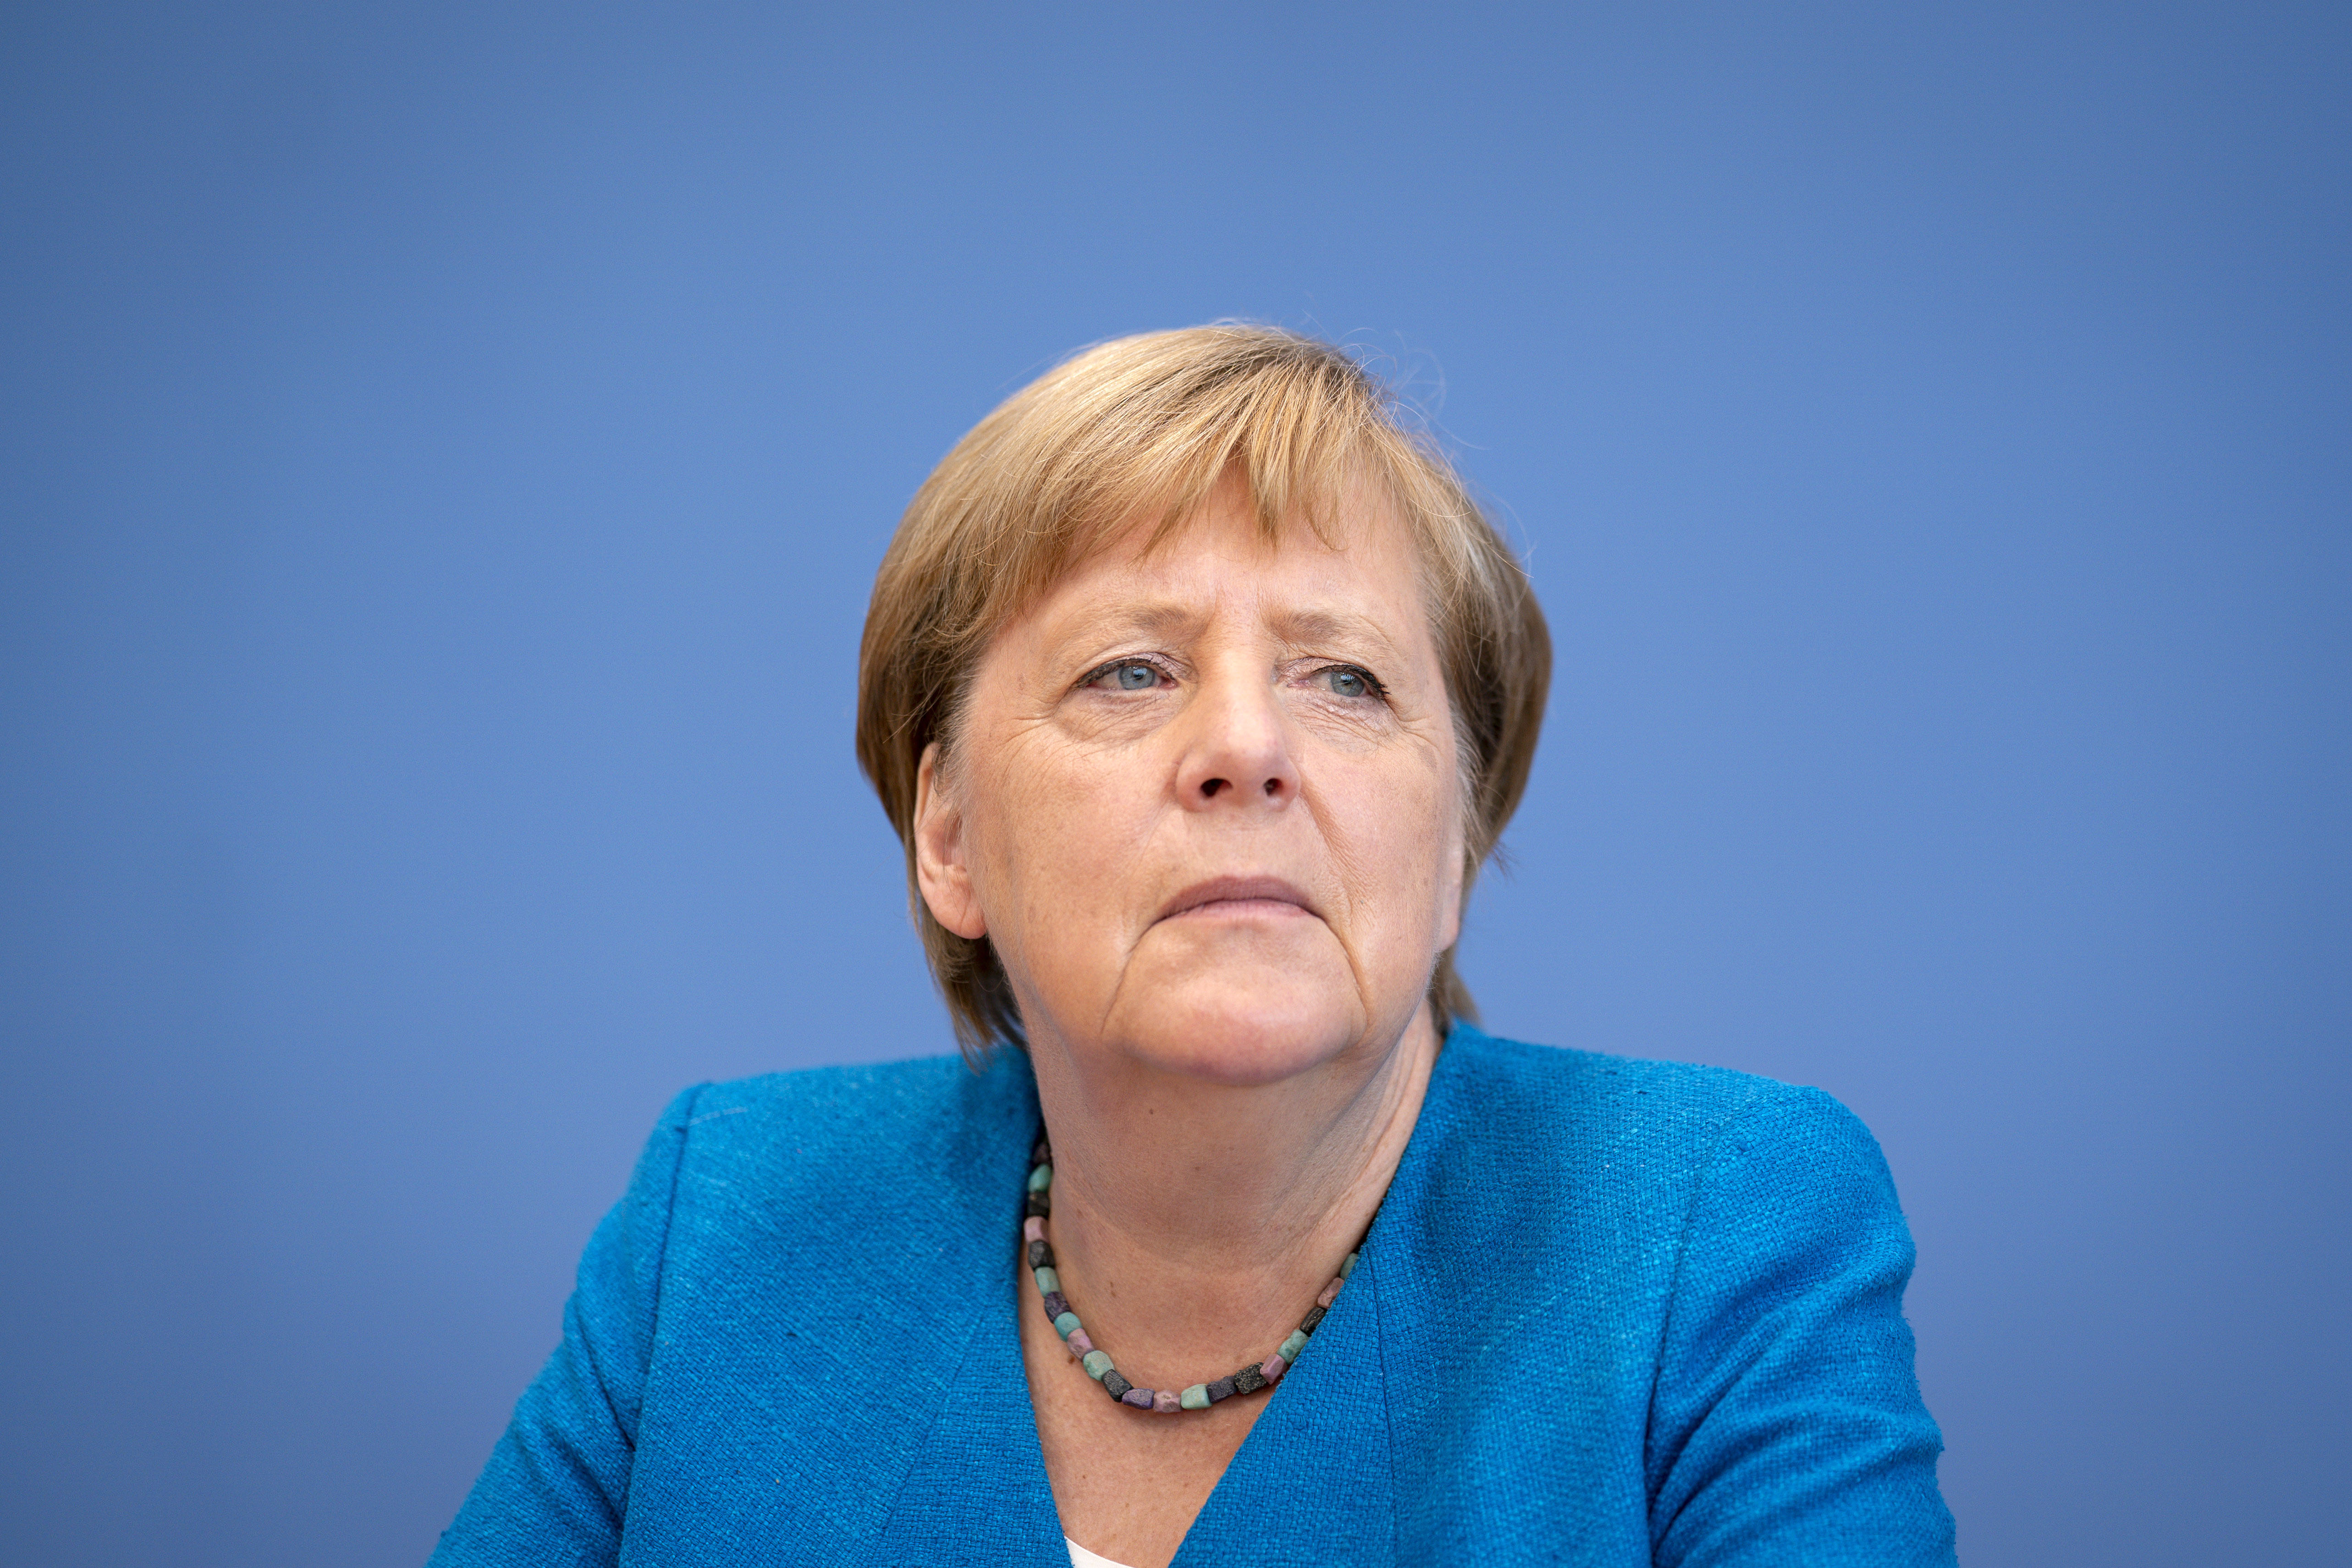 German Chancellor Angela Merkel speaks to the media in Berlin on August 28.